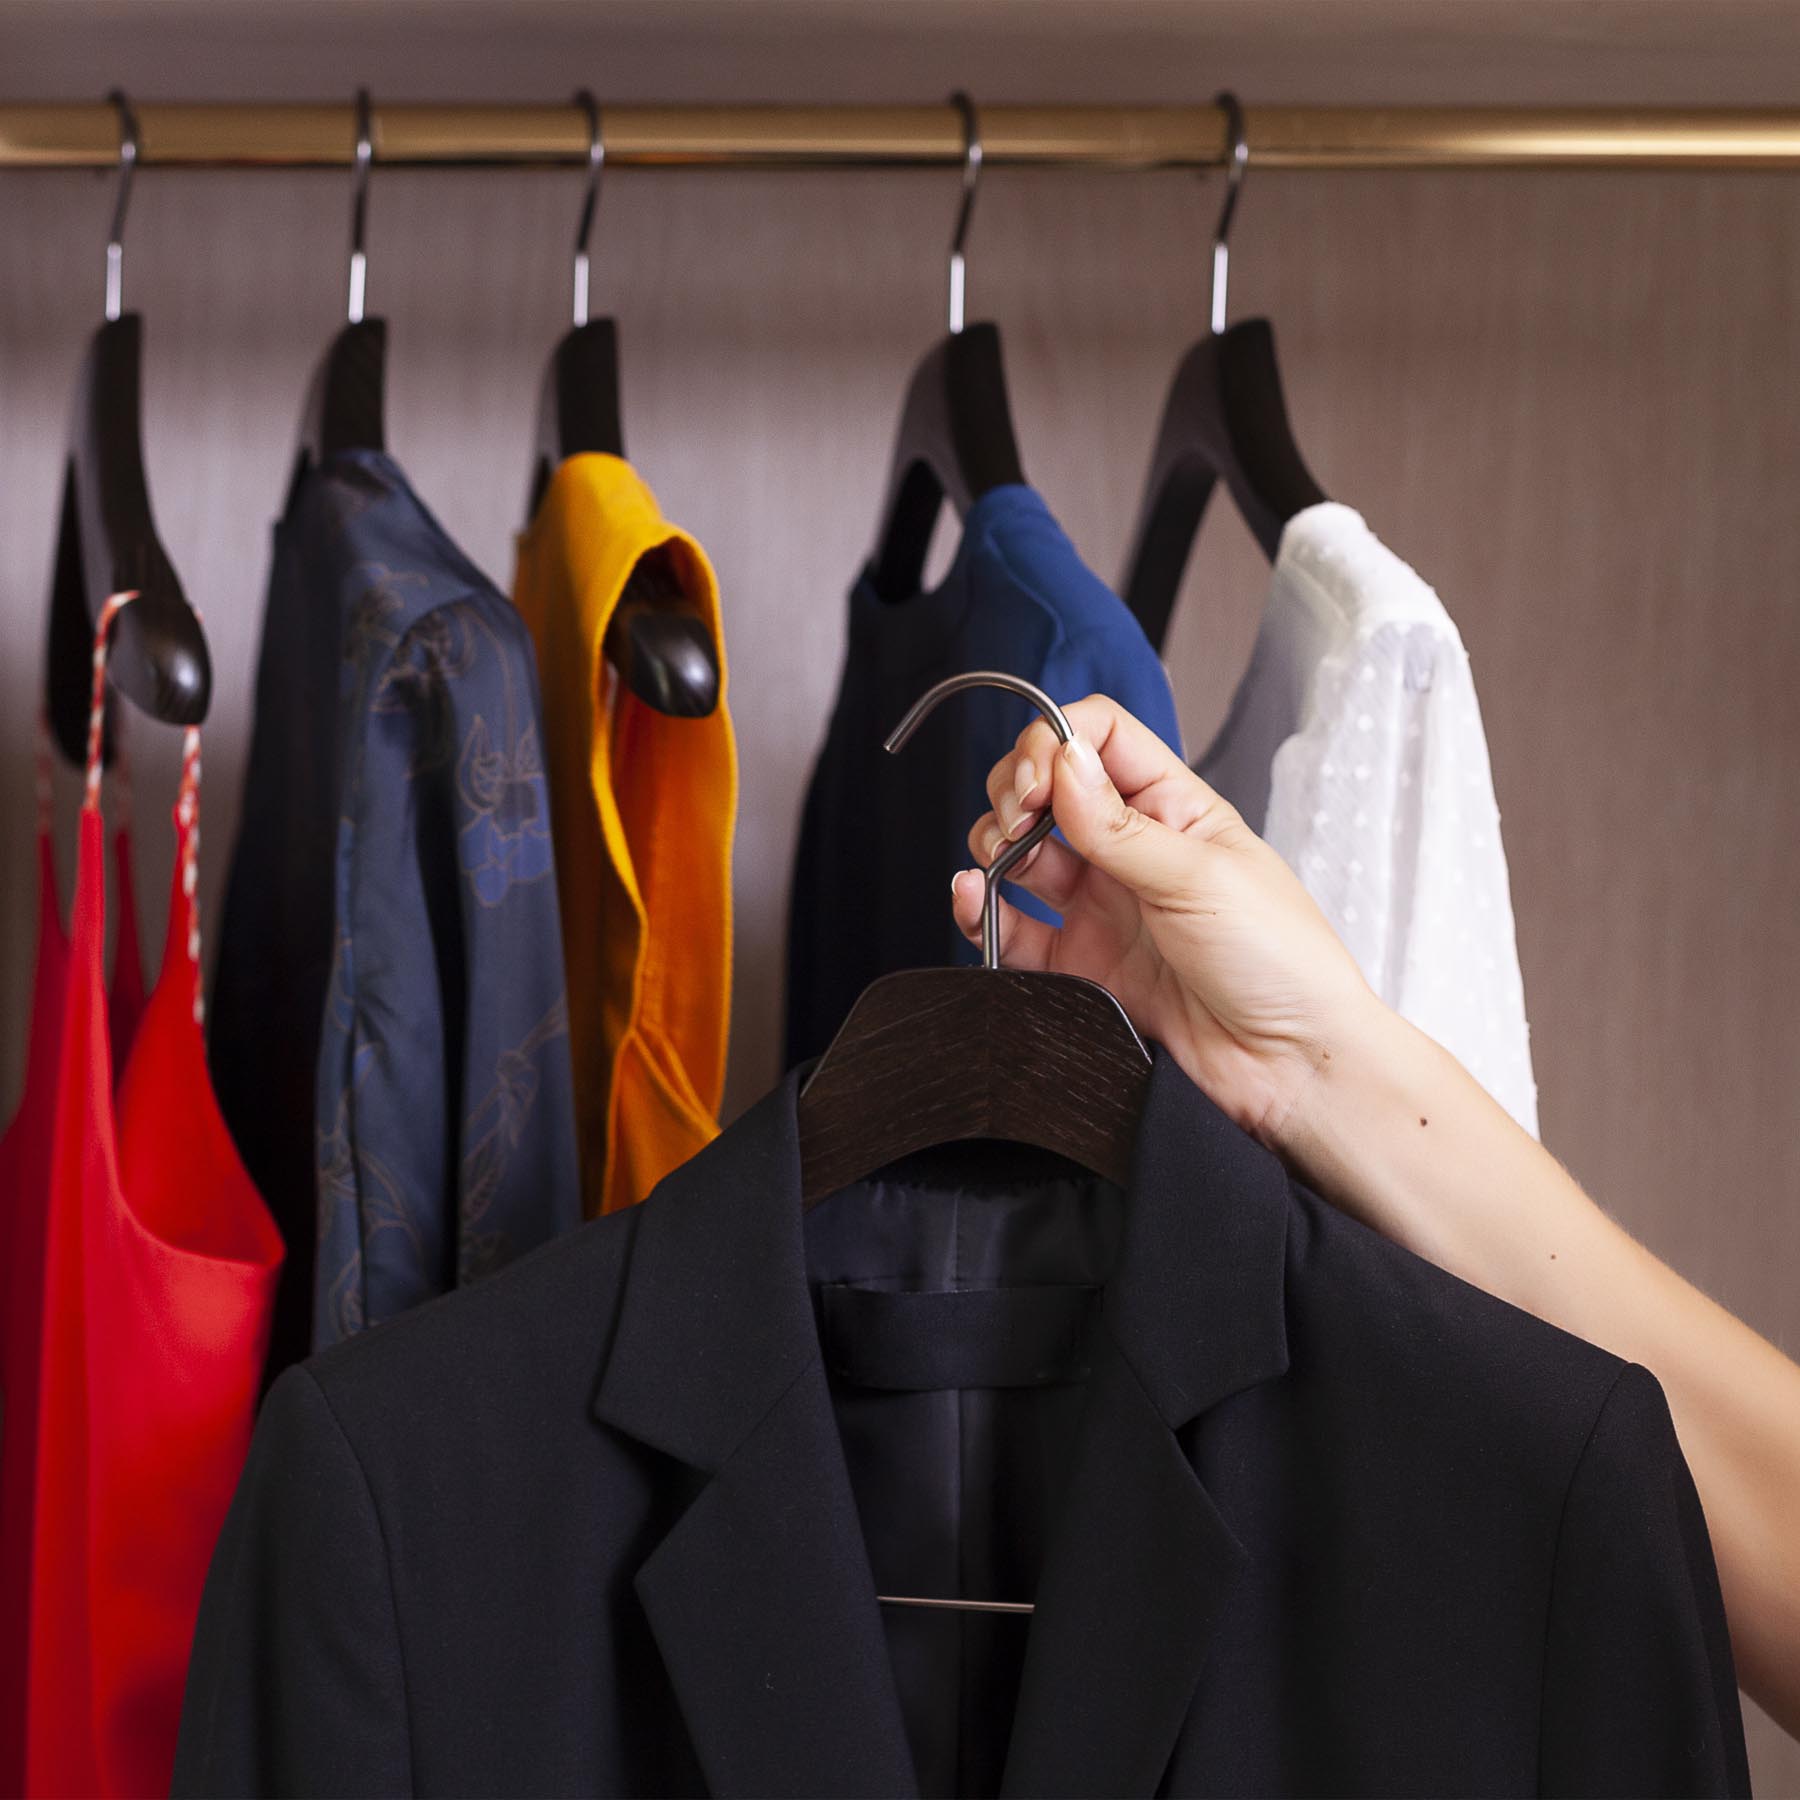 6 Kleiderbügel für Jacke und Anzug – Farbe schwarz